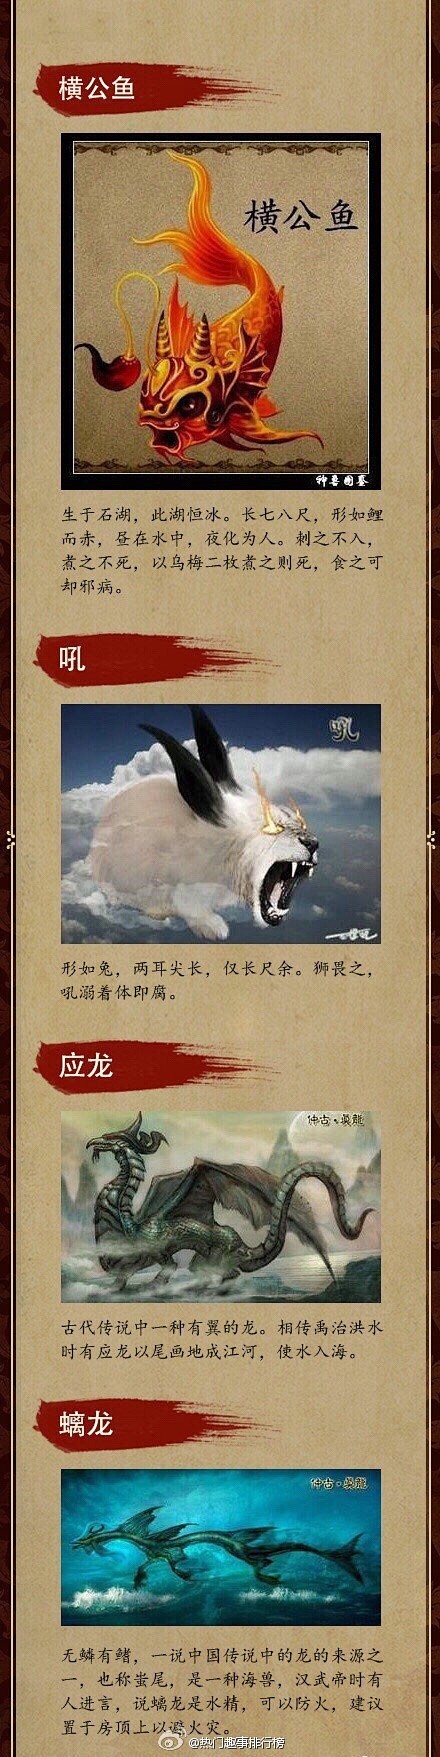 在中华文化传承中,上古时期神话传说中有很多种神兽,如白泽,夔,凤凰